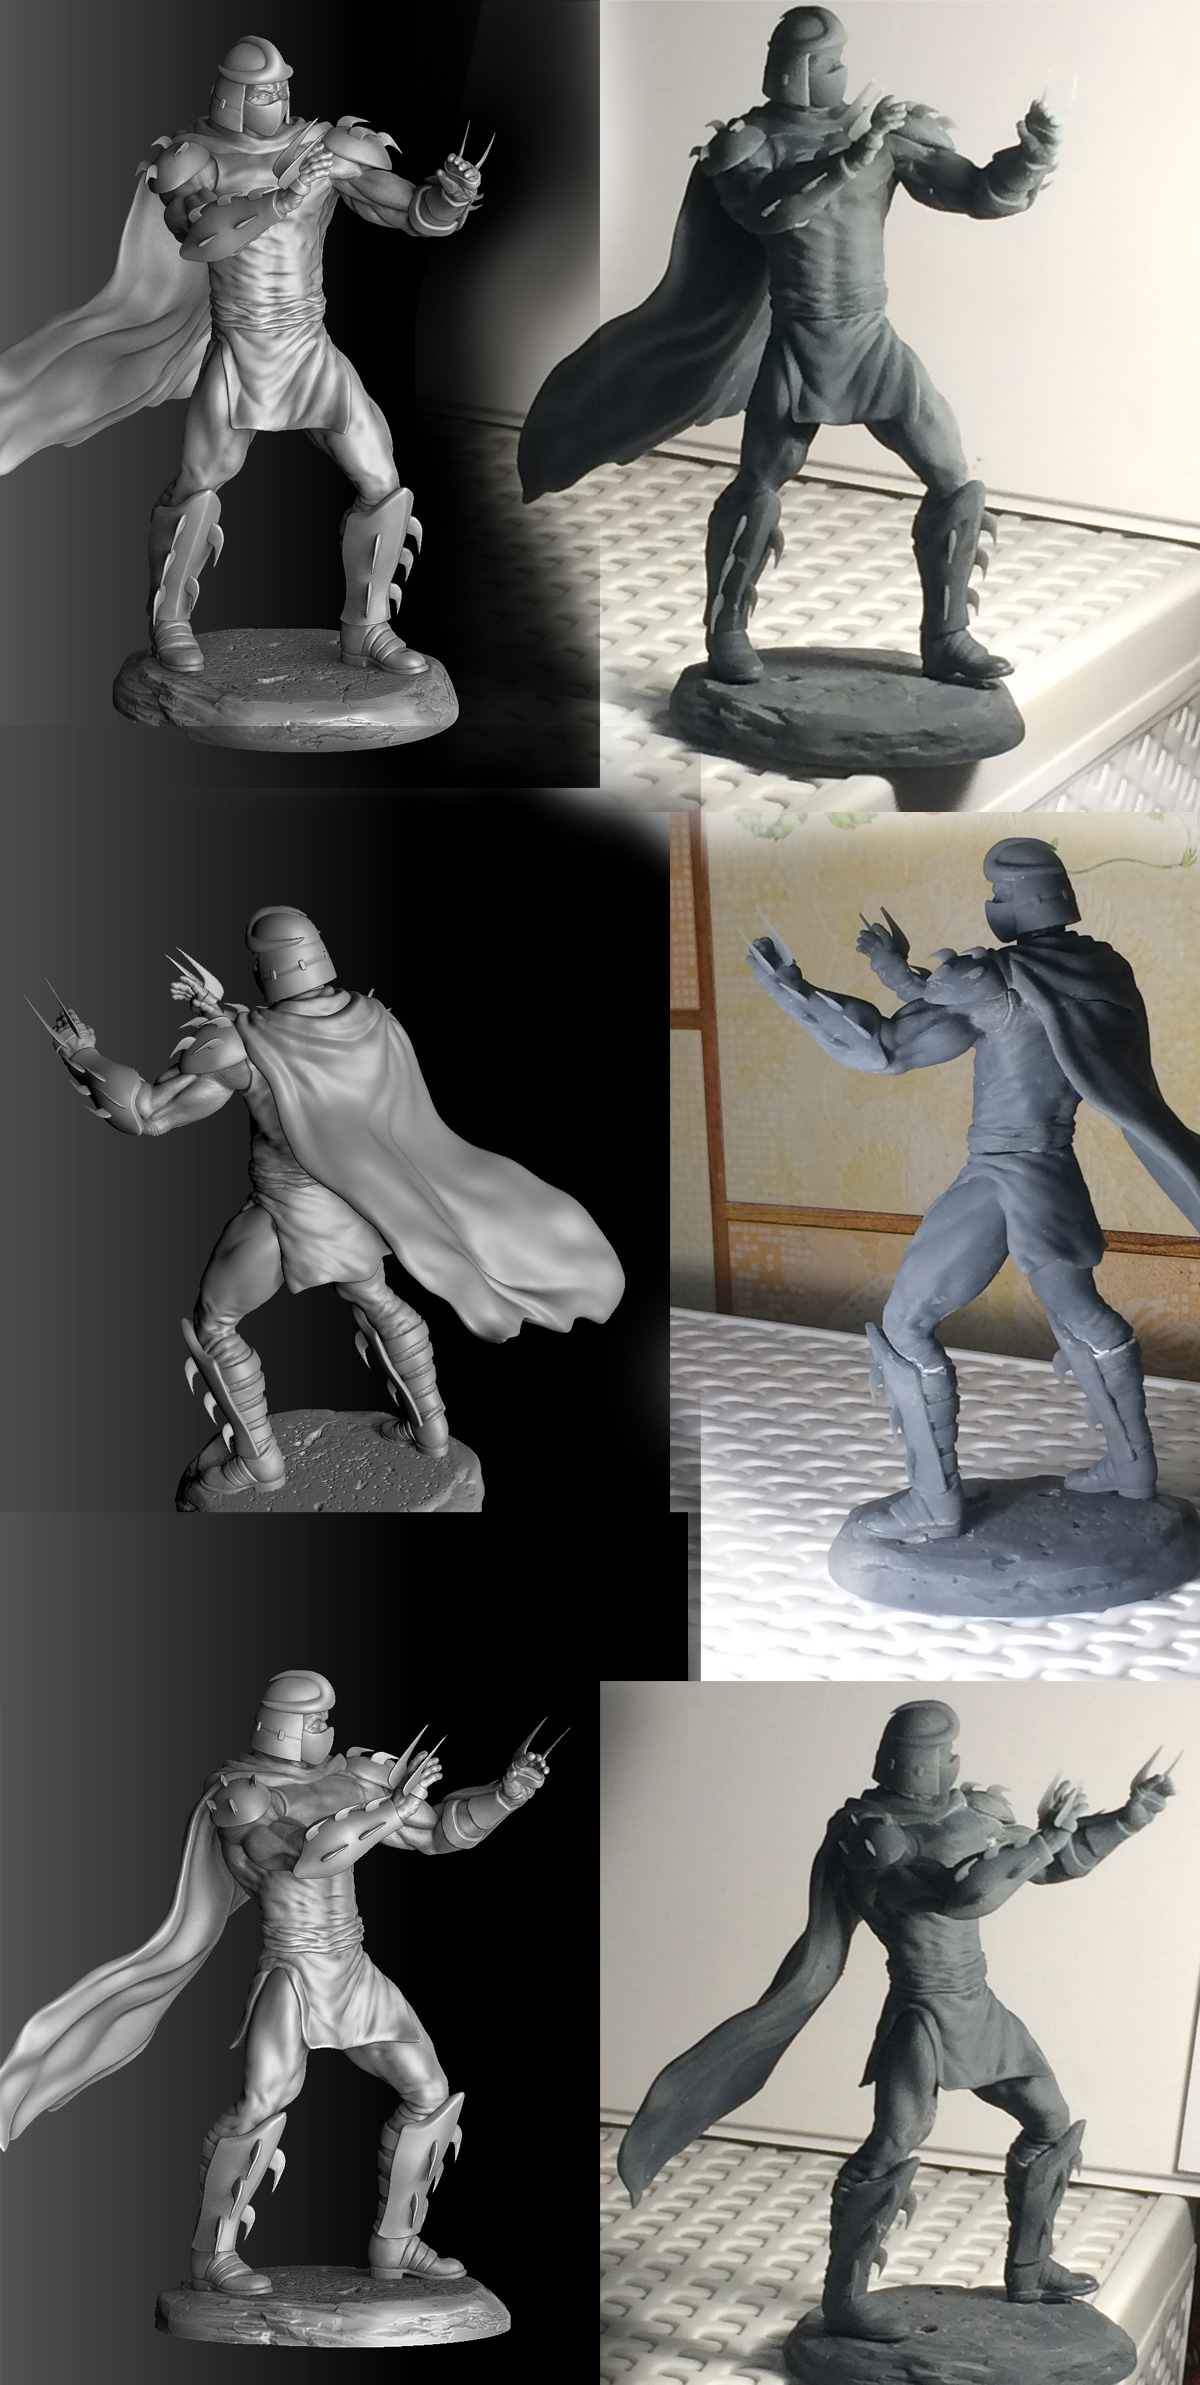 Shredder supervillain Ninja Turtles model for 3D Print stl 3D printable mutant Pizza krang Mutagen